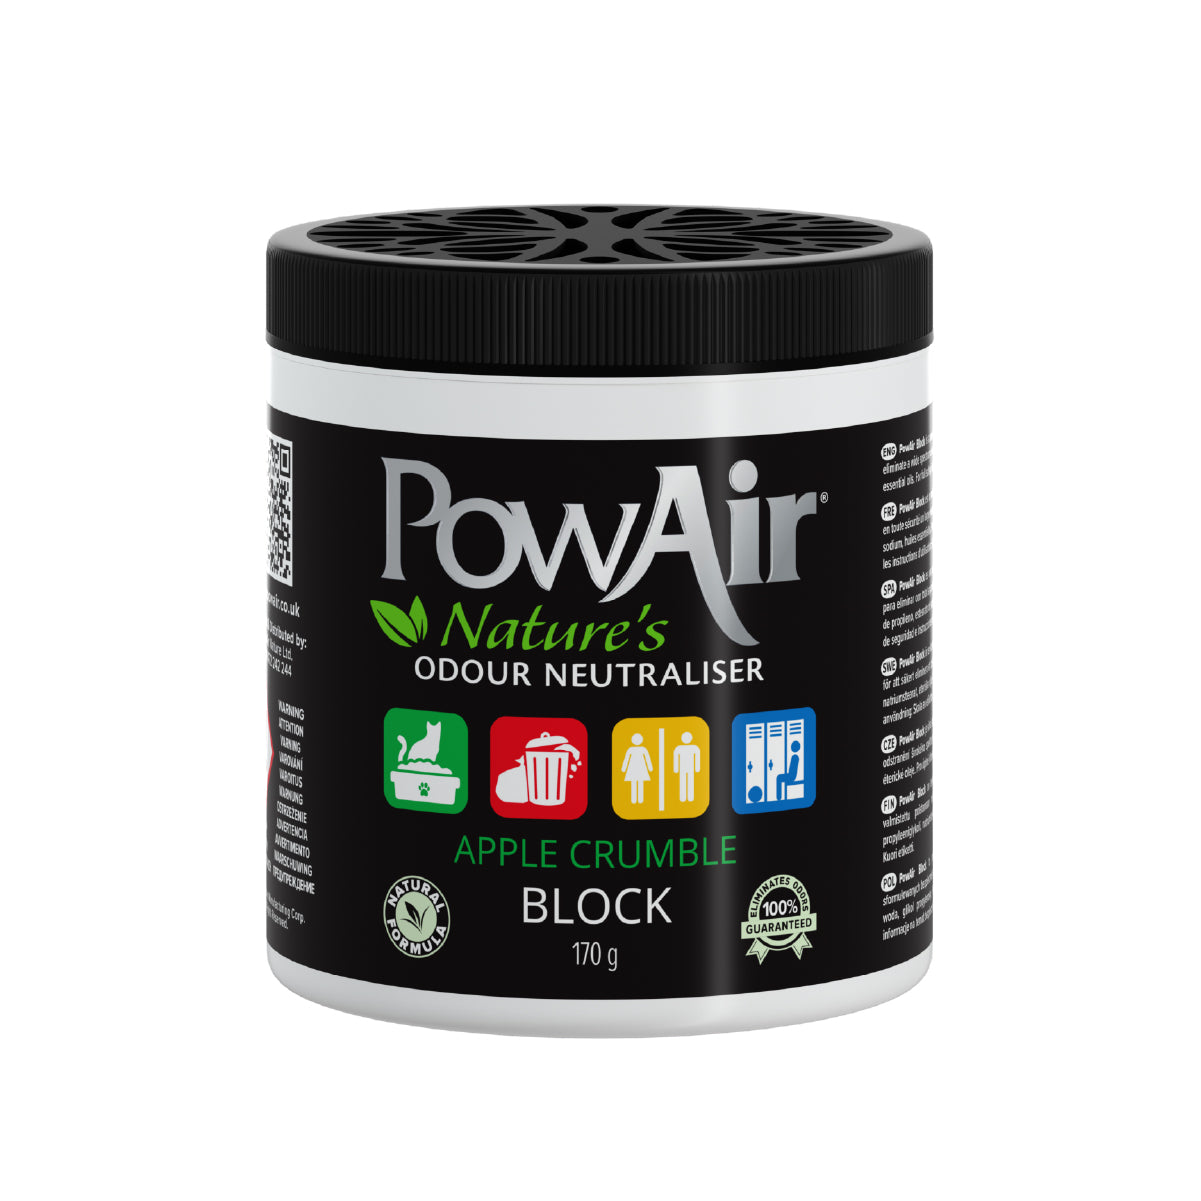 PowAir Block Natural Odour Neutraliser - 170g